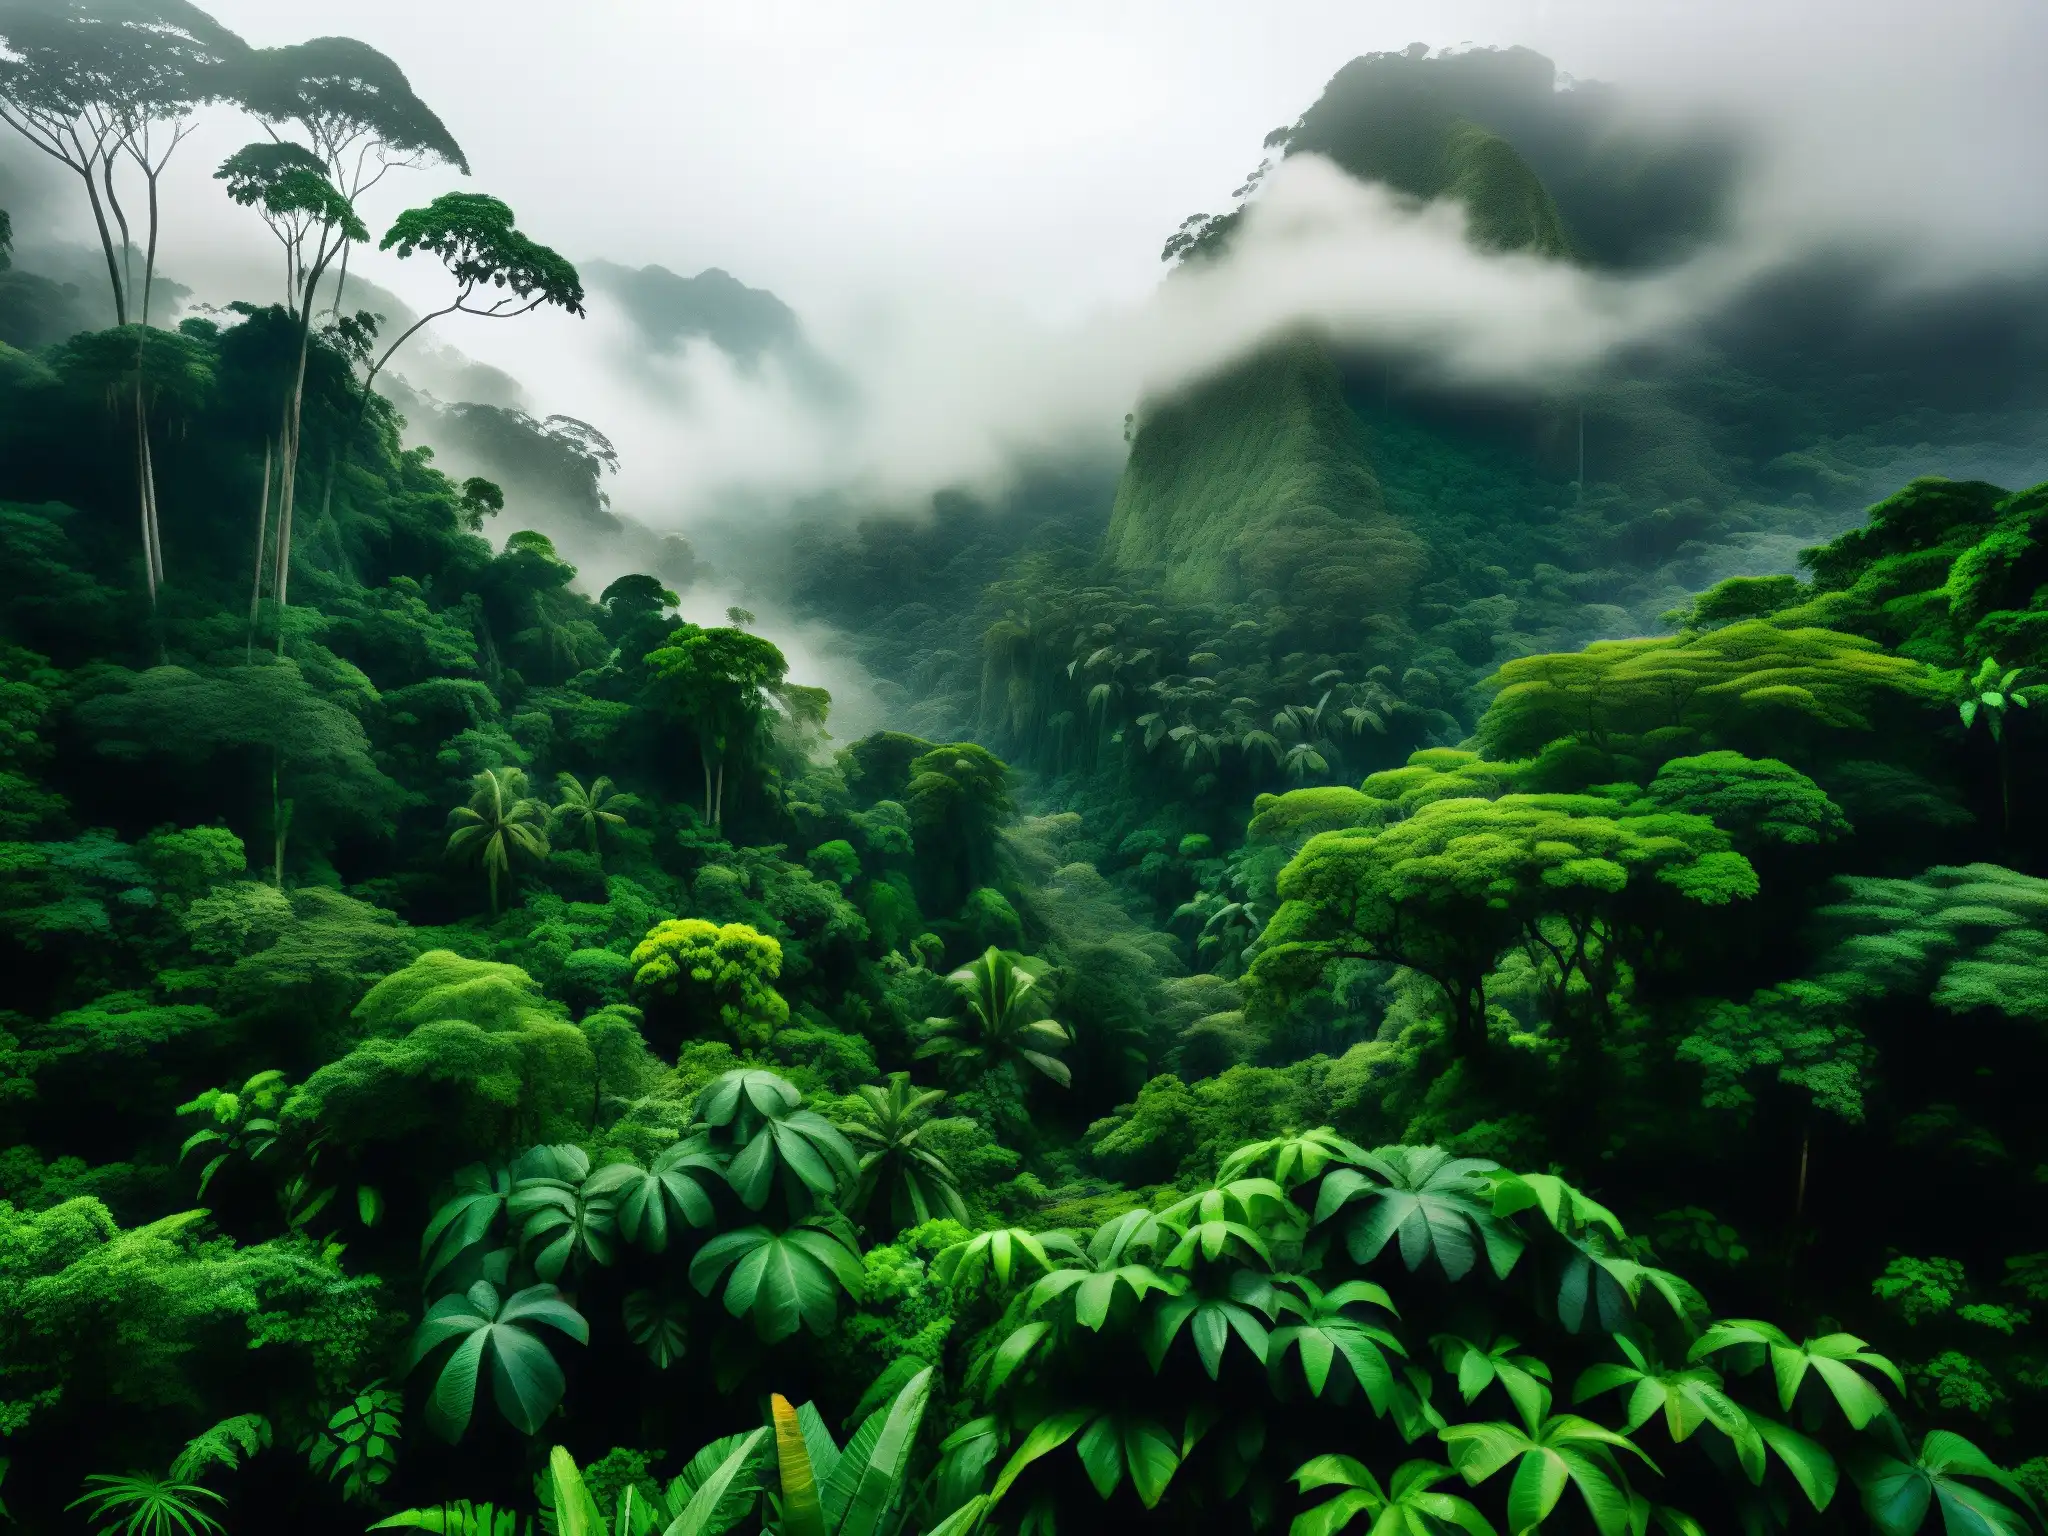 Imagen detallada de una densa selva colombiana con neblina baja, árboles antiguos y figura misteriosa